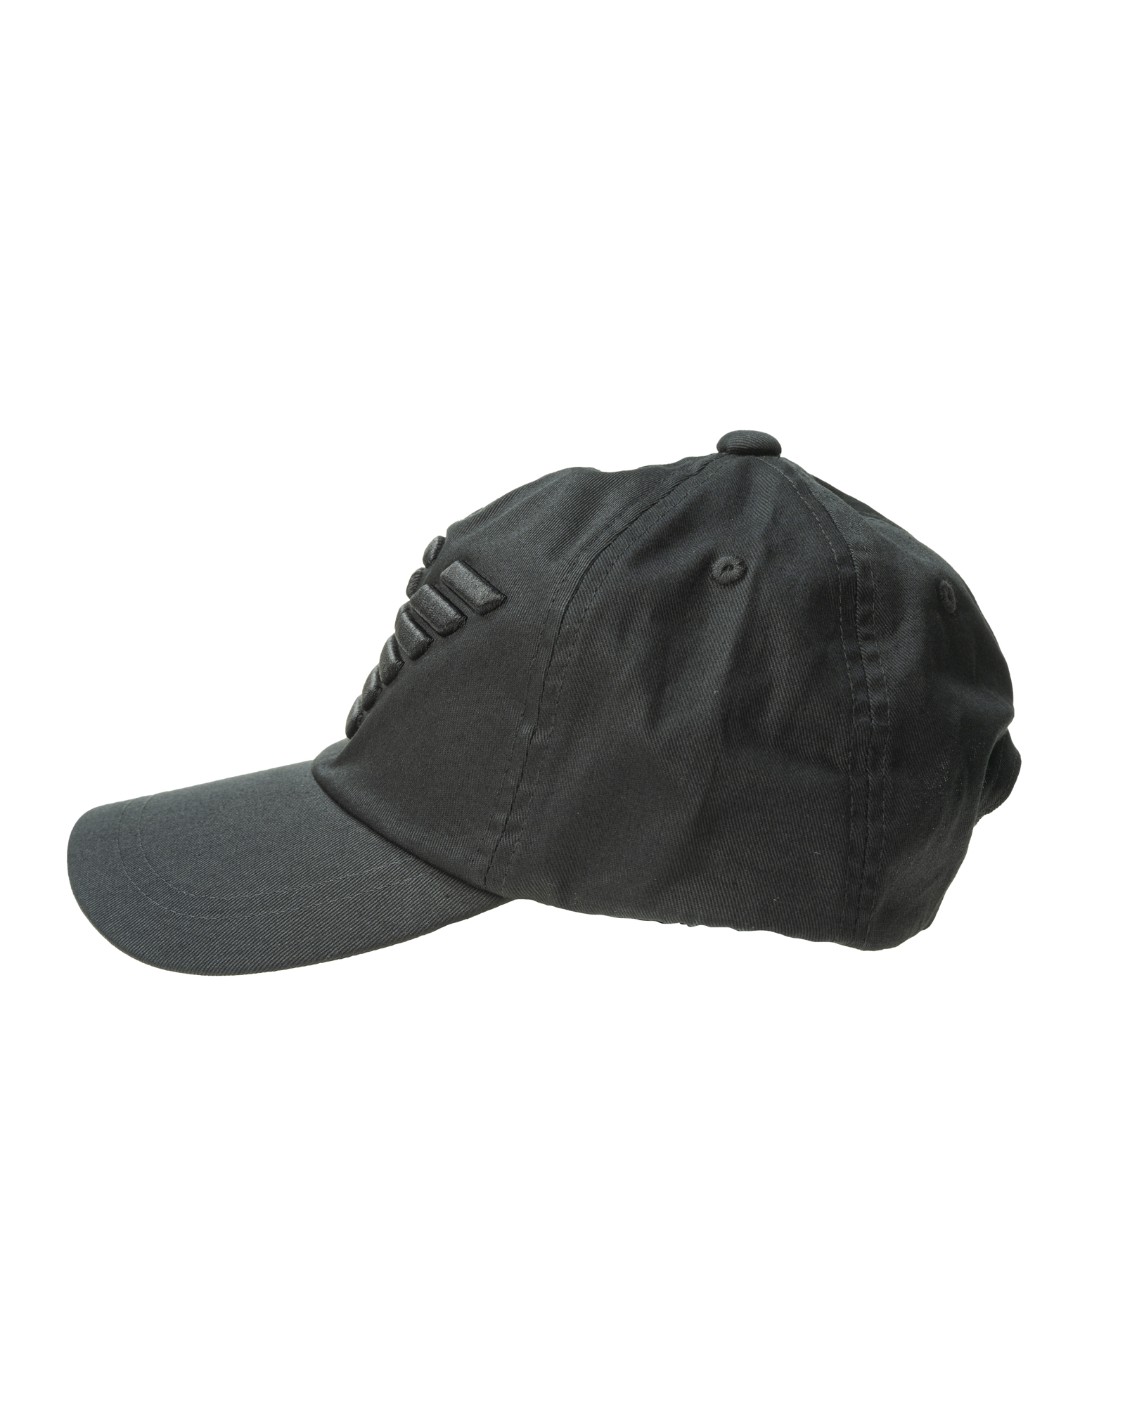 shop EMPORIO ARMANI  Cappello: Emporio Armani cappello baseball con macro logo aquila ricamato.
Chiusura regolabile.
Composizione: 100% cotone.. 627522 CC995-00020 number 1404152